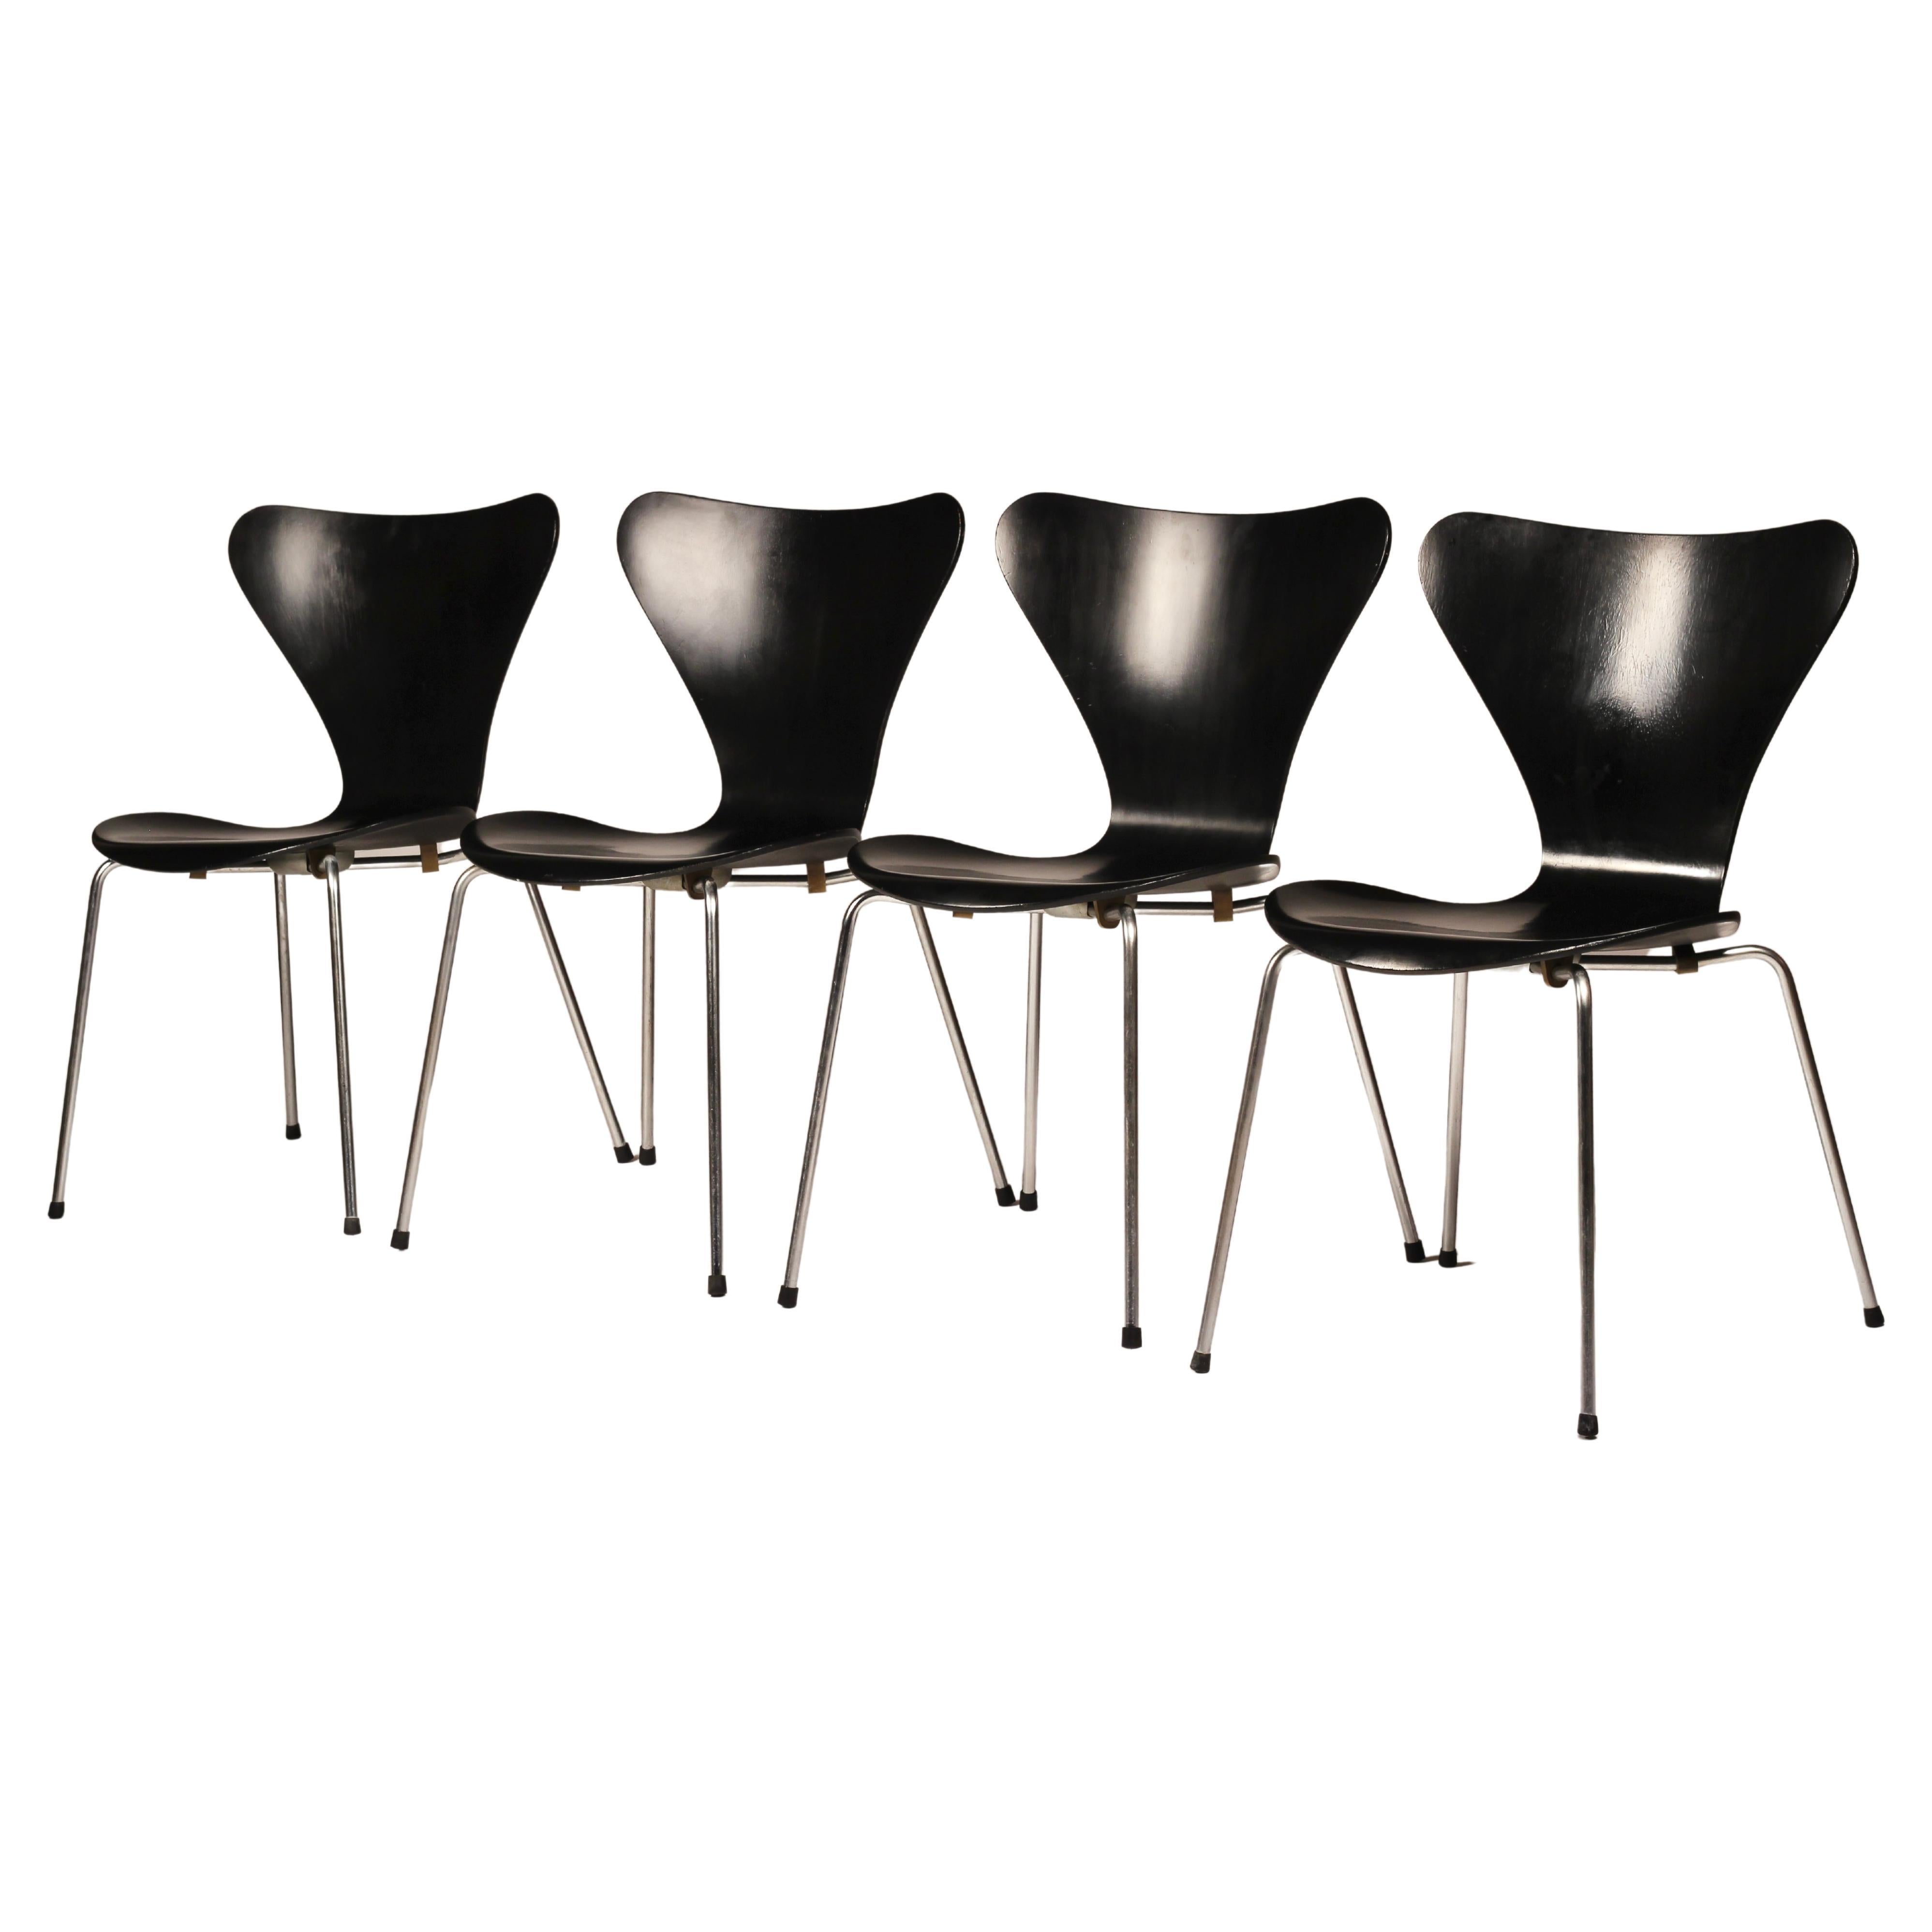 Eine zeitlose Design-Ikone ist dieses wunderbare Set aus acht stapelbaren schwarzen Esszimmerstühlen des Modells #3107 (auch bekannt als 